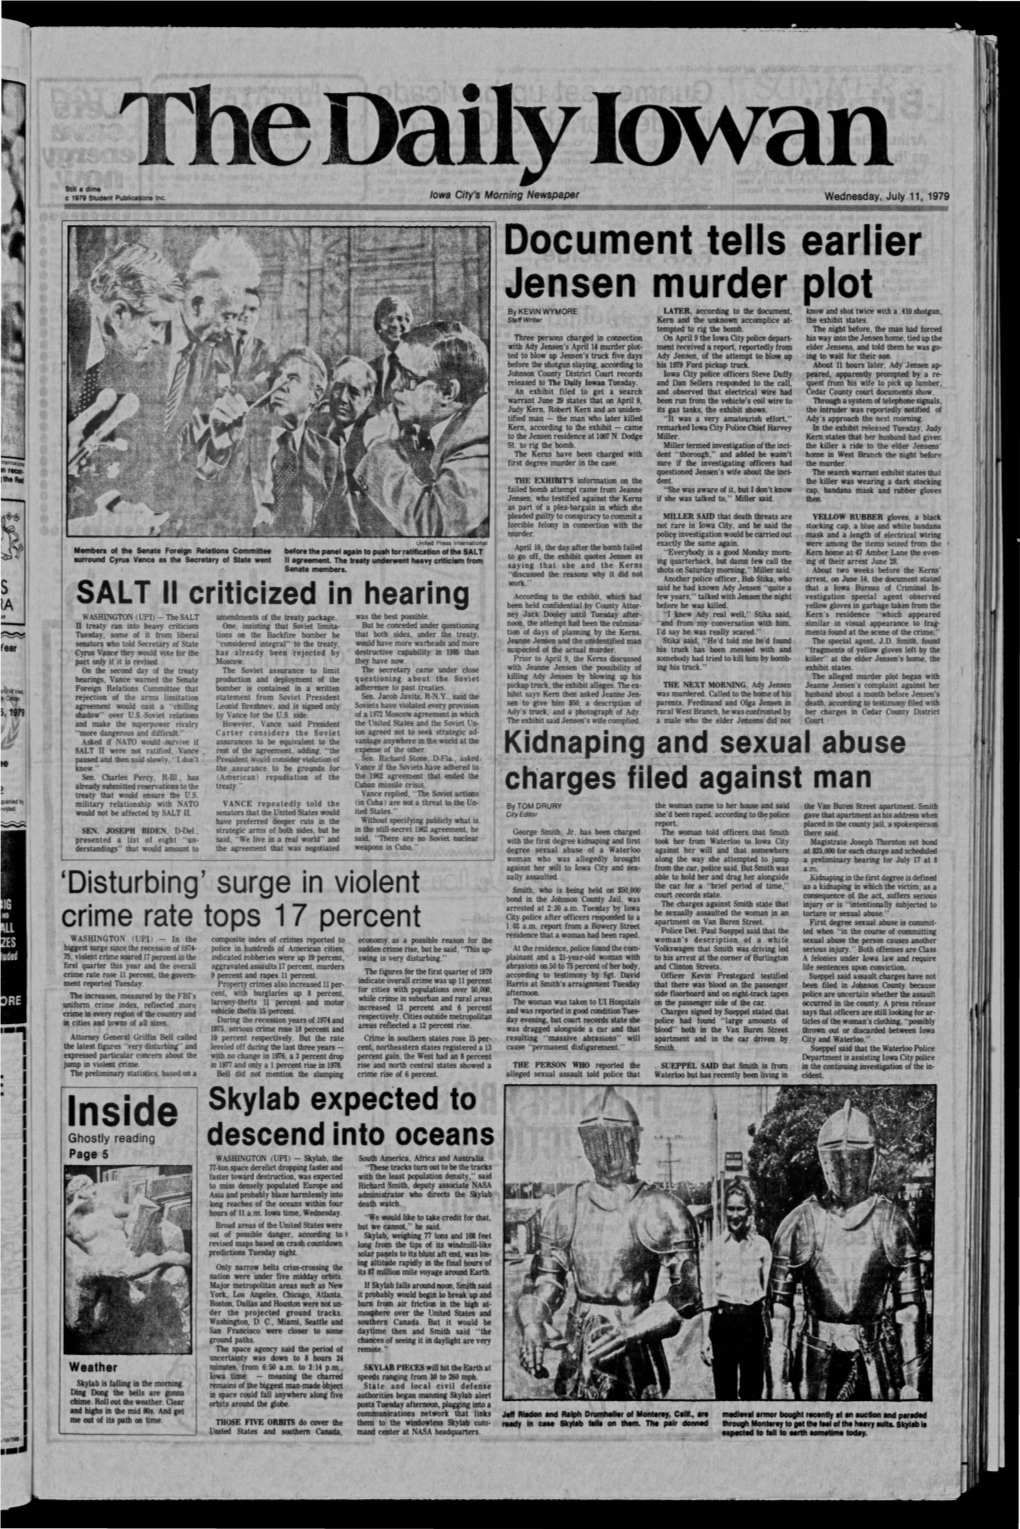 Daily Iowan (Iowa City, Iowa), 1979-07-11